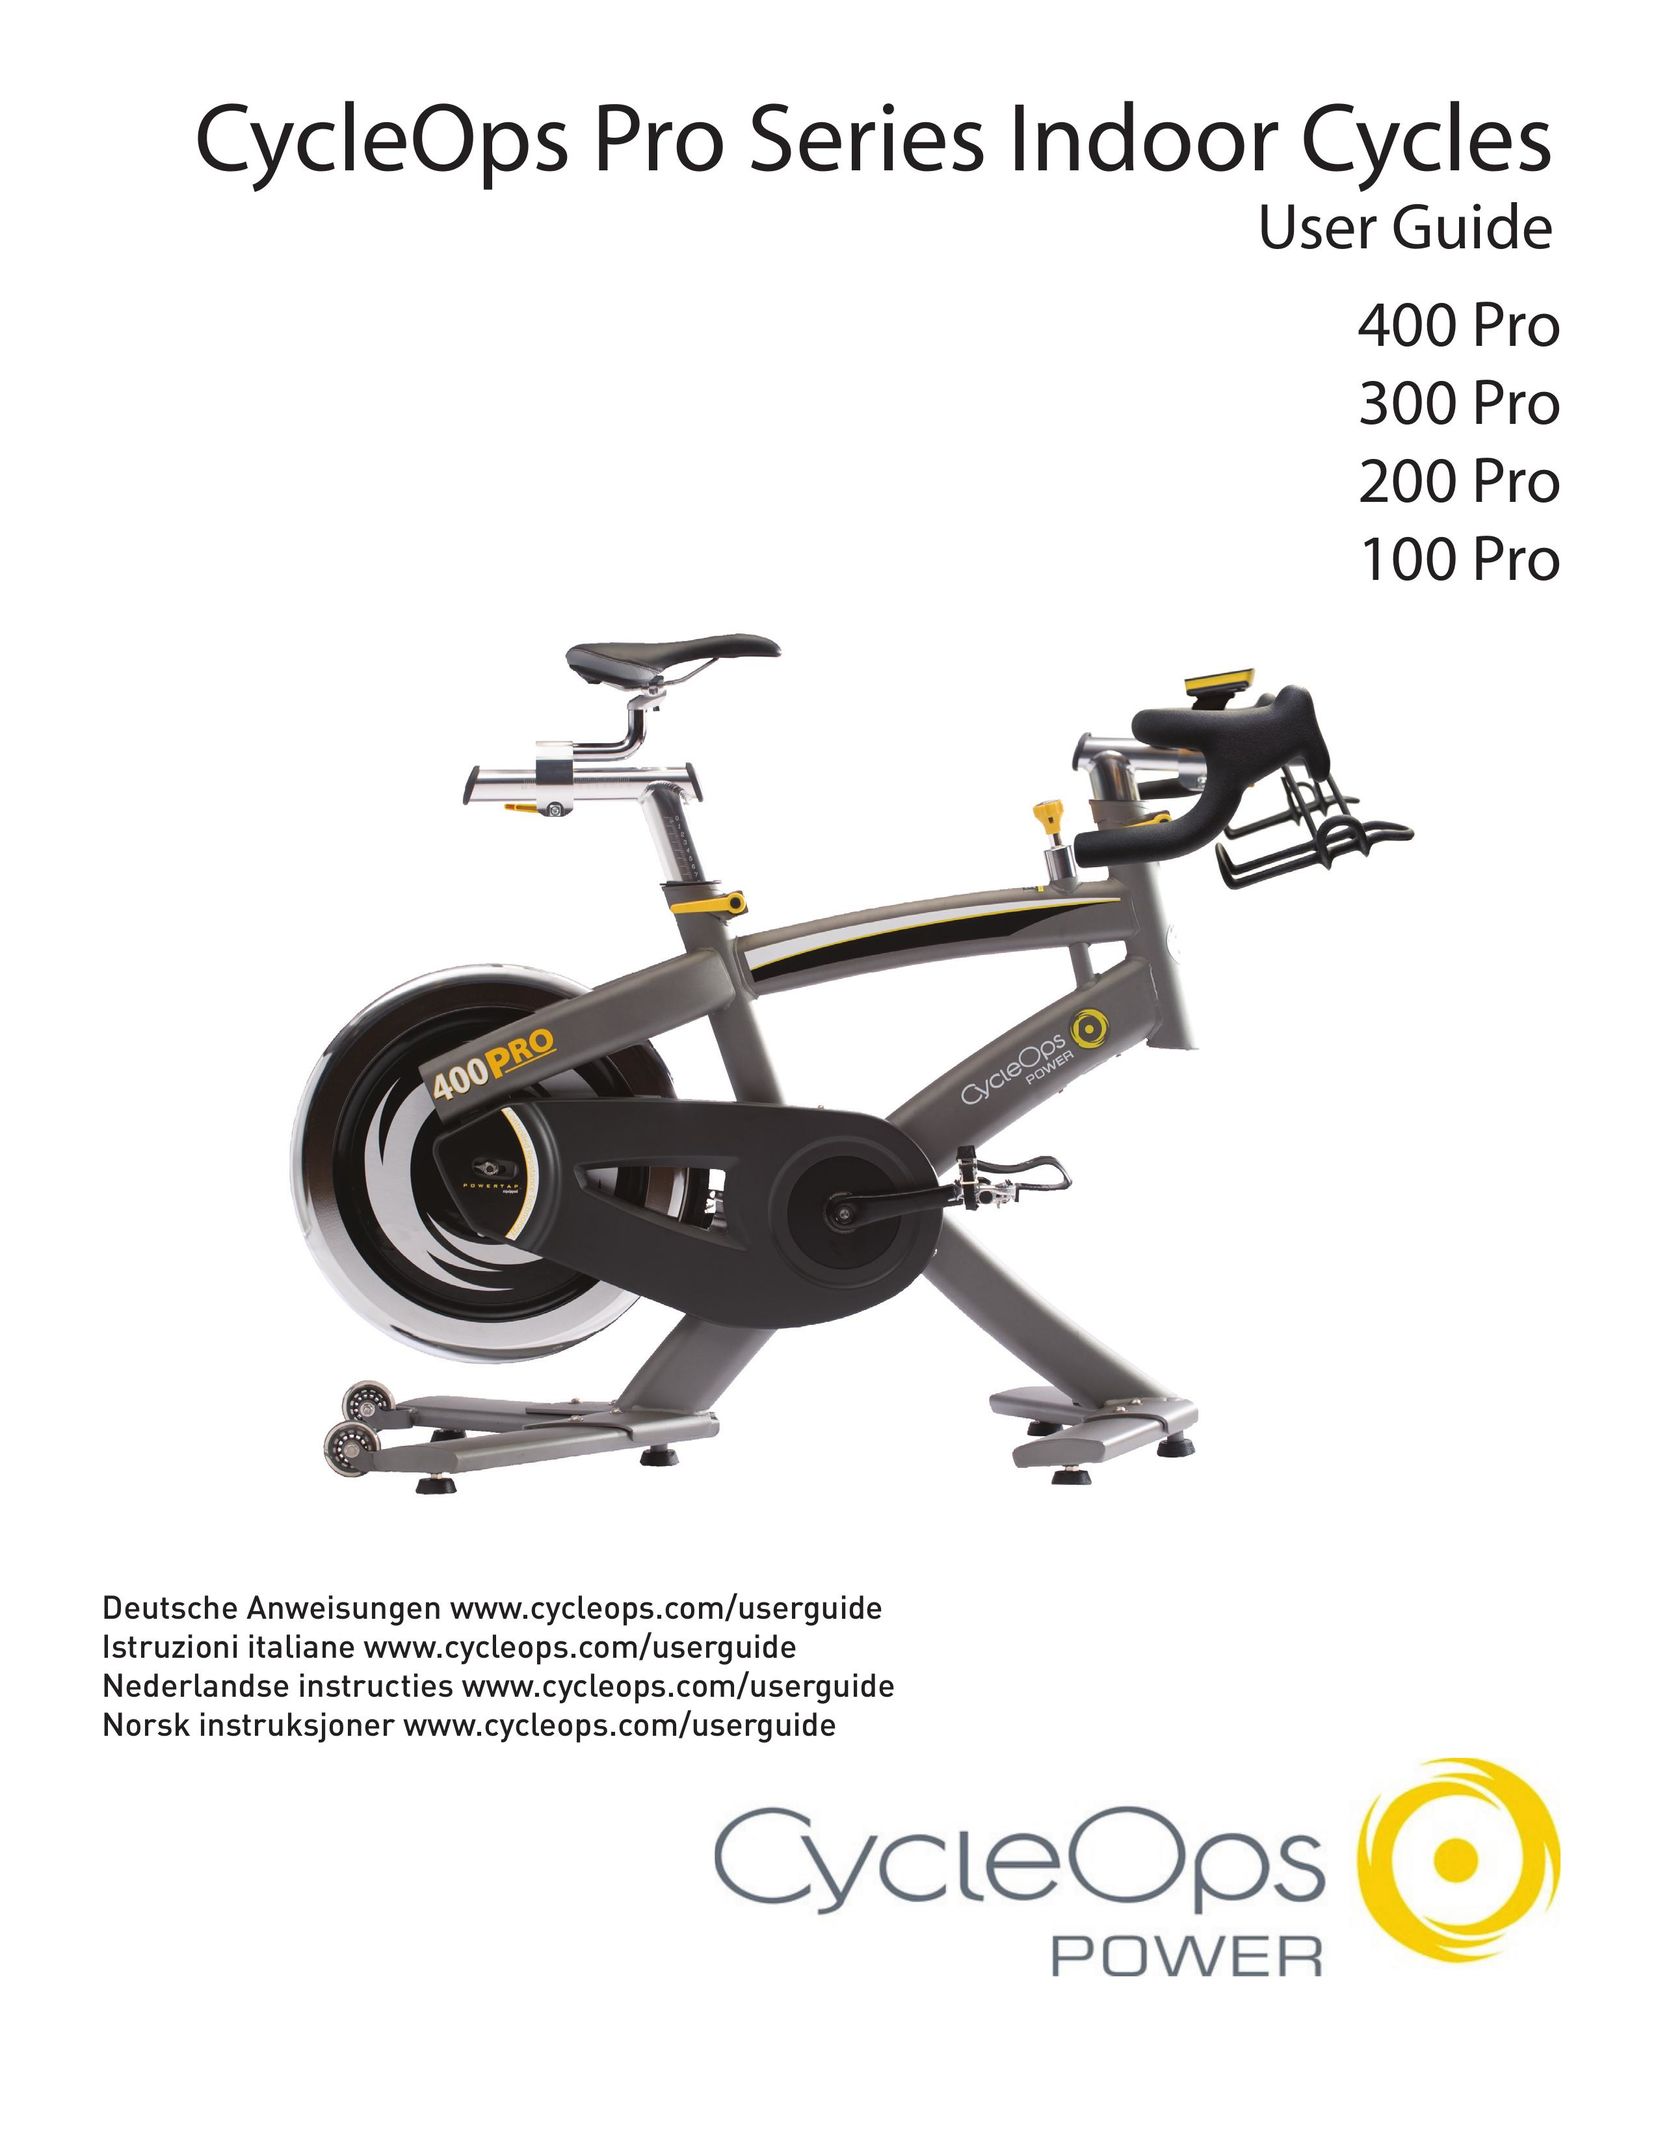 CycleOps 400 PRO Exercise Bike User Manual